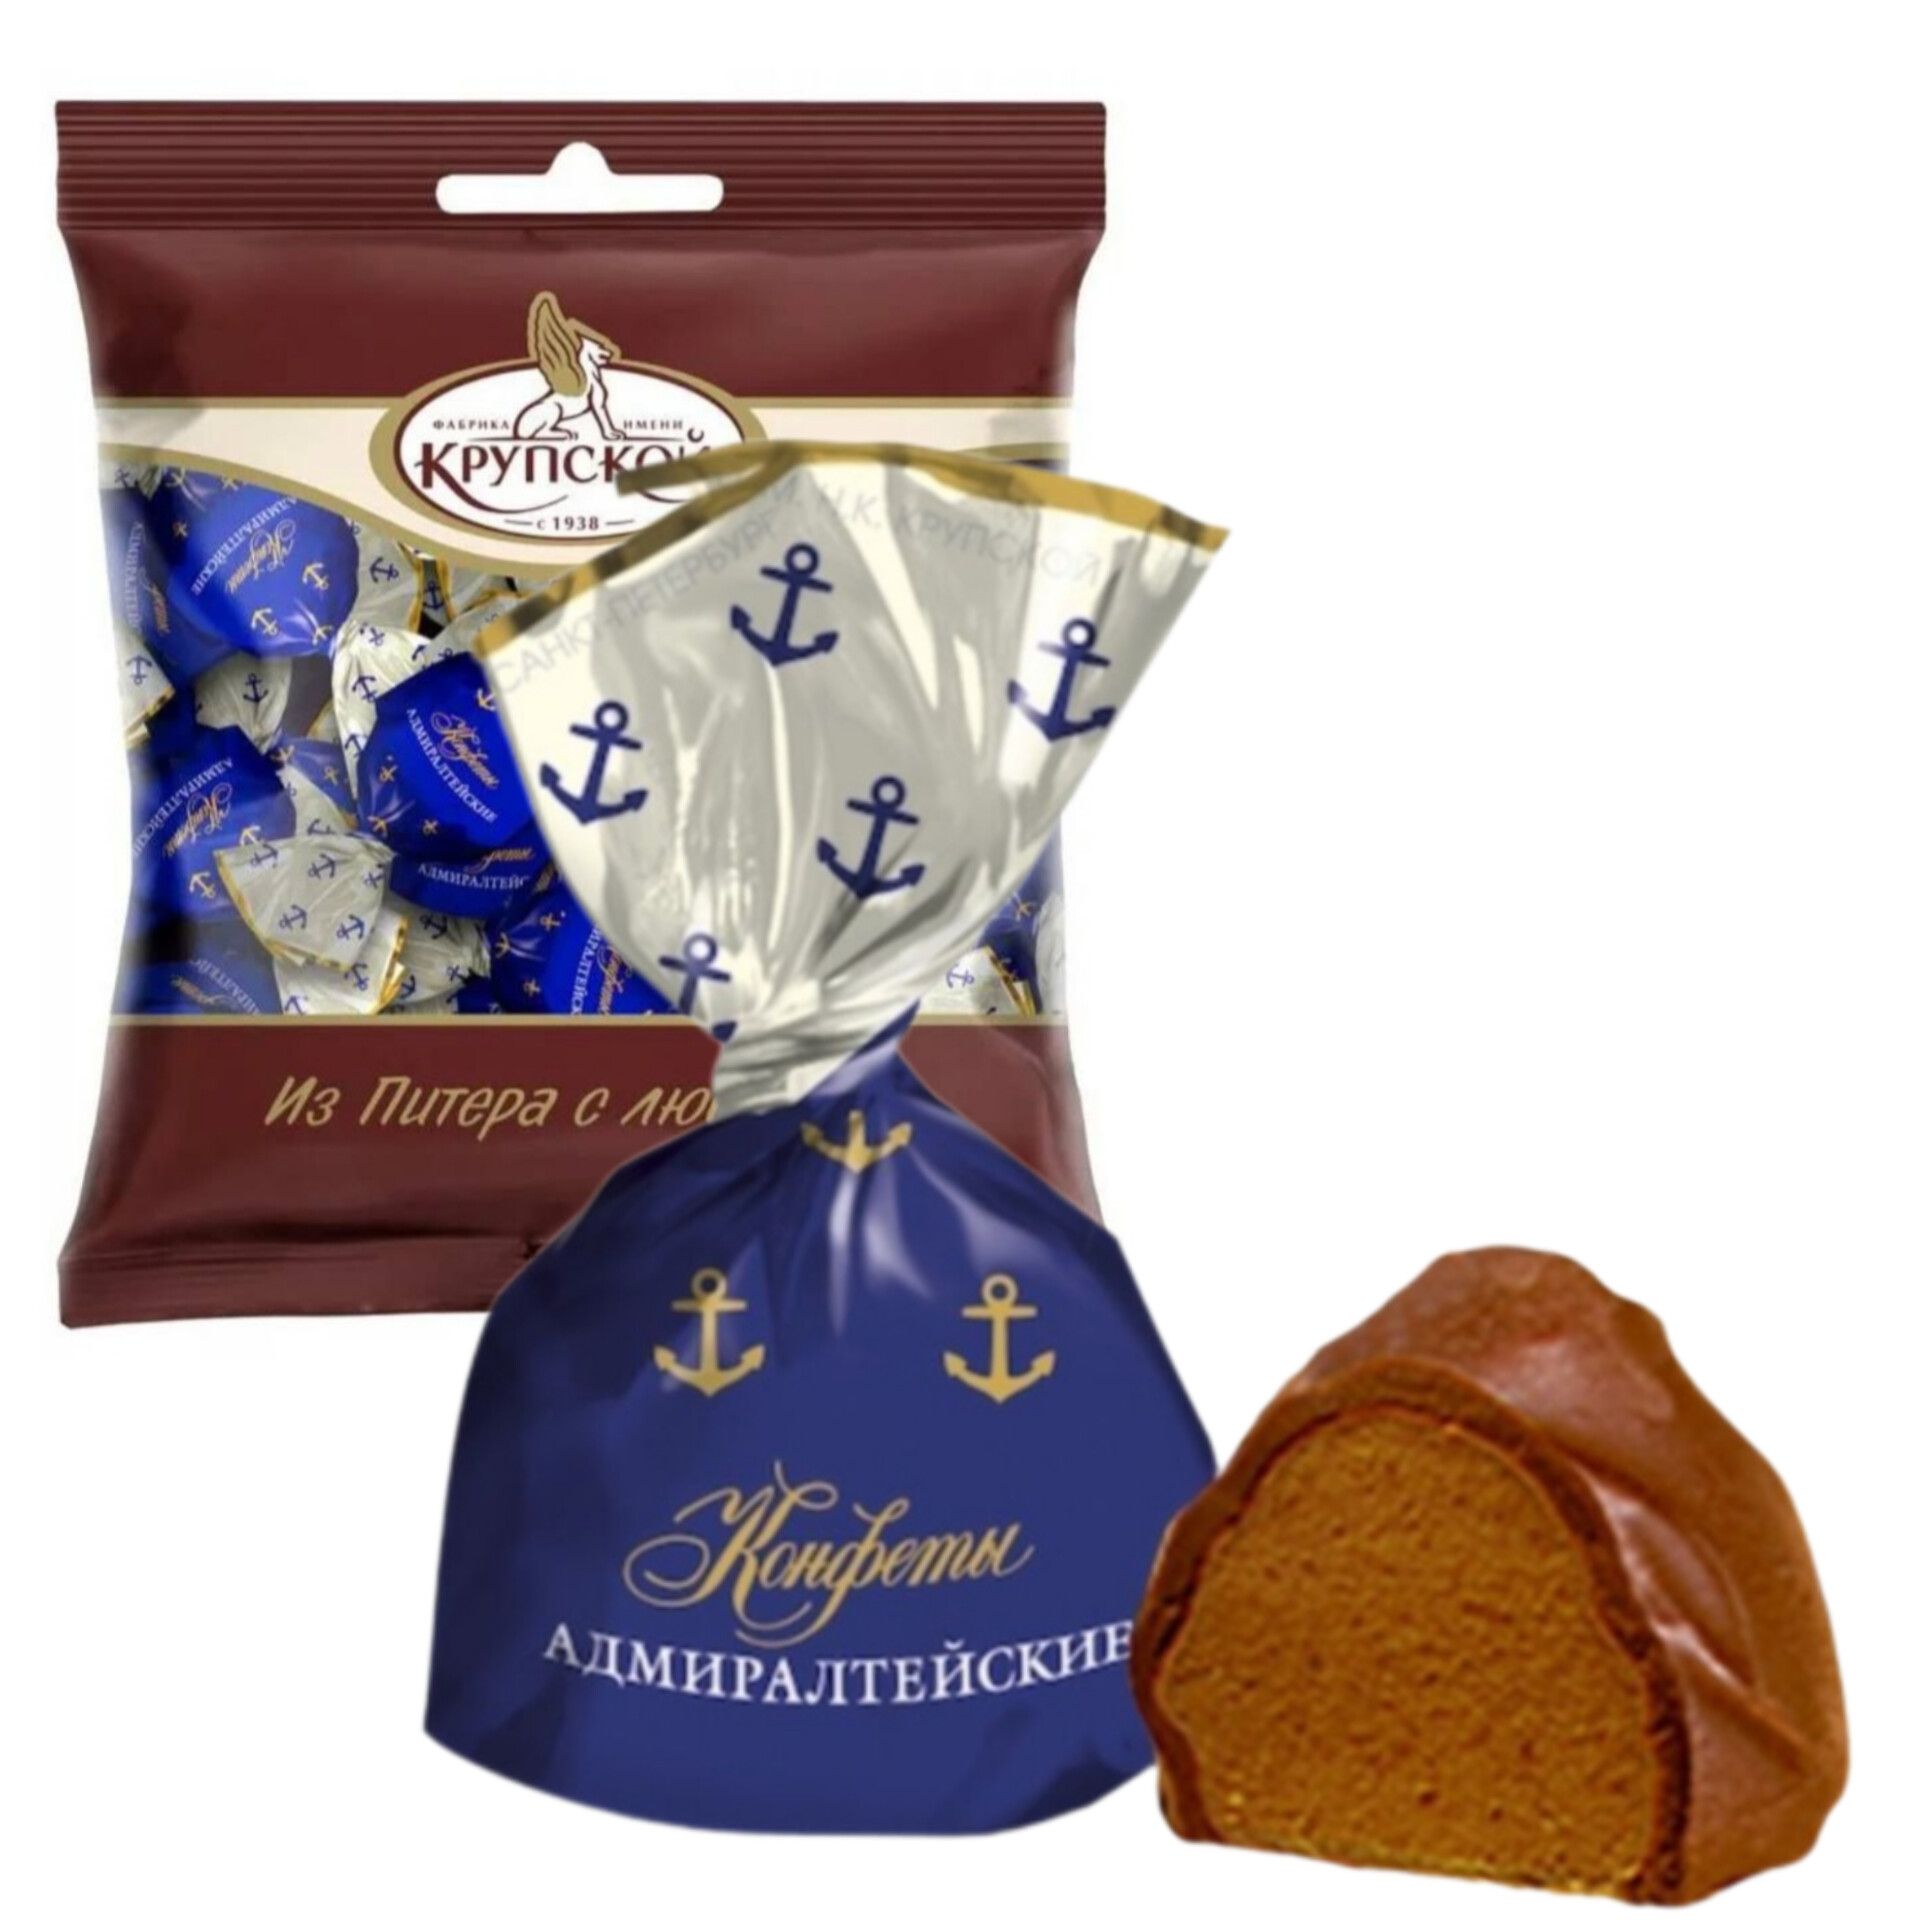 Конфеты"Адмиралтейские",шоколадно-ореховоепралинесовкусомамаретто,пакет1кг,КФим.Крупской